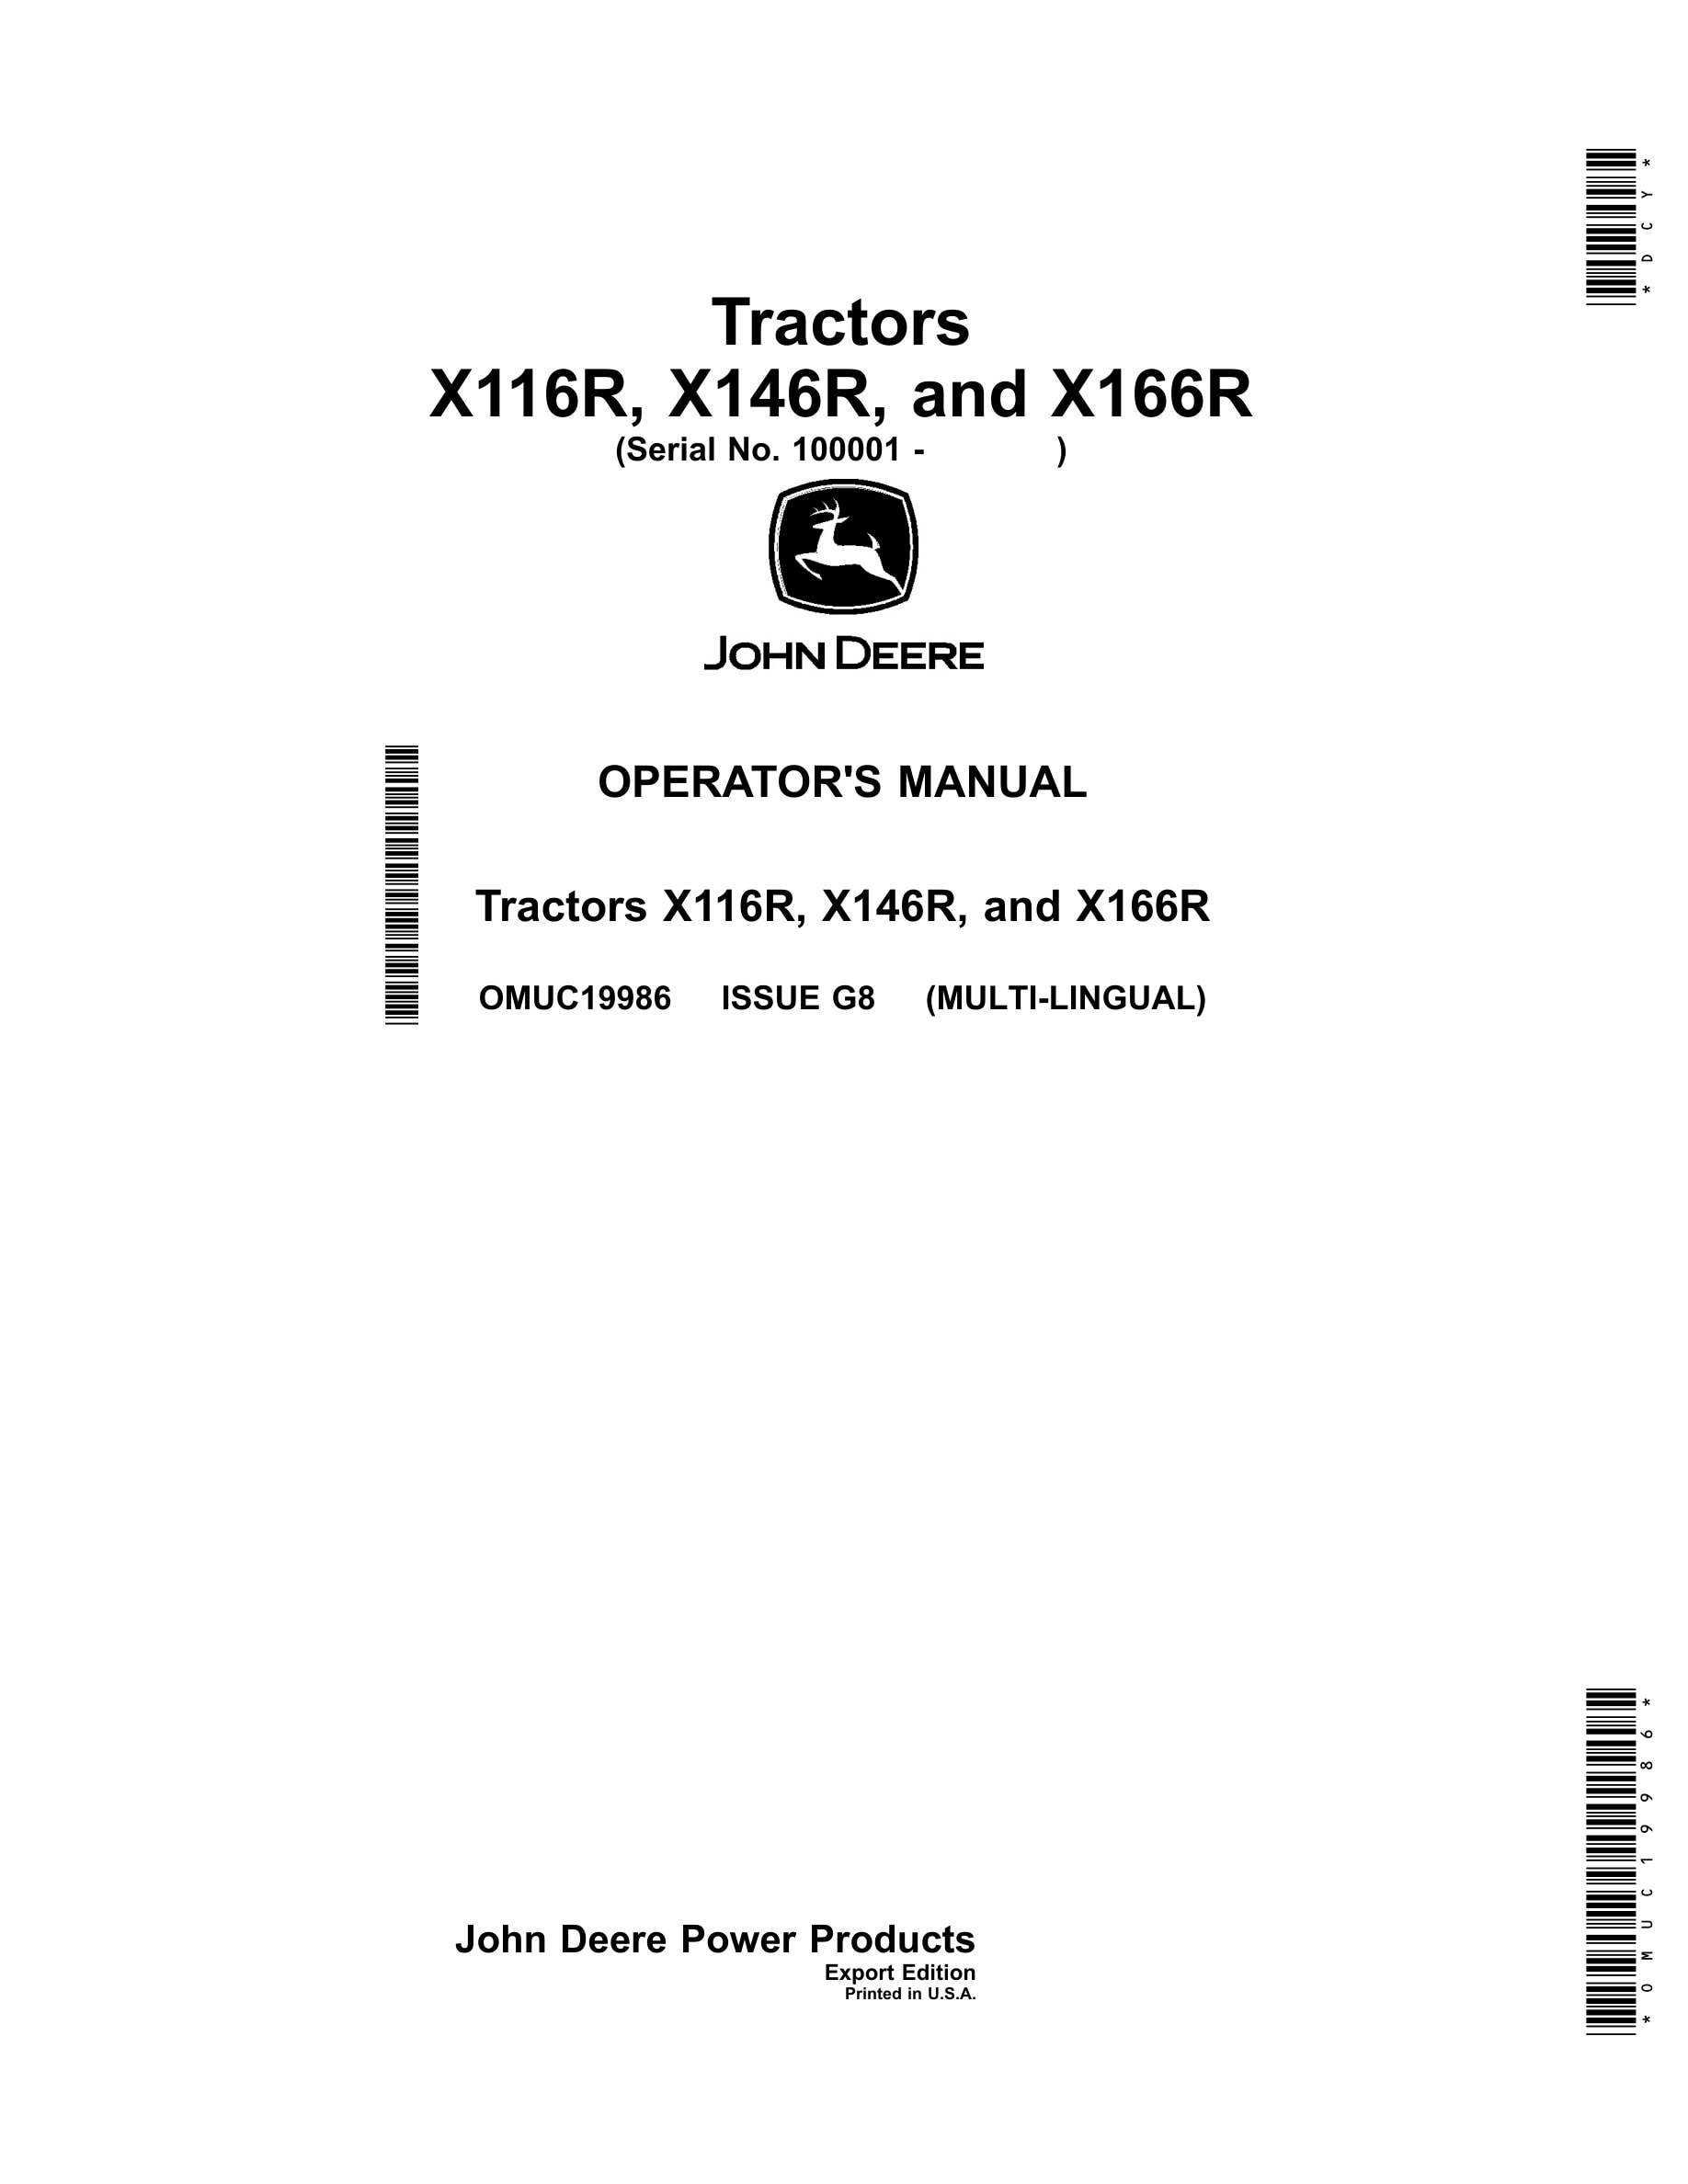 John Deere X116r, X146r, And X166r Tractors Operator Manuals OMUC19986-1